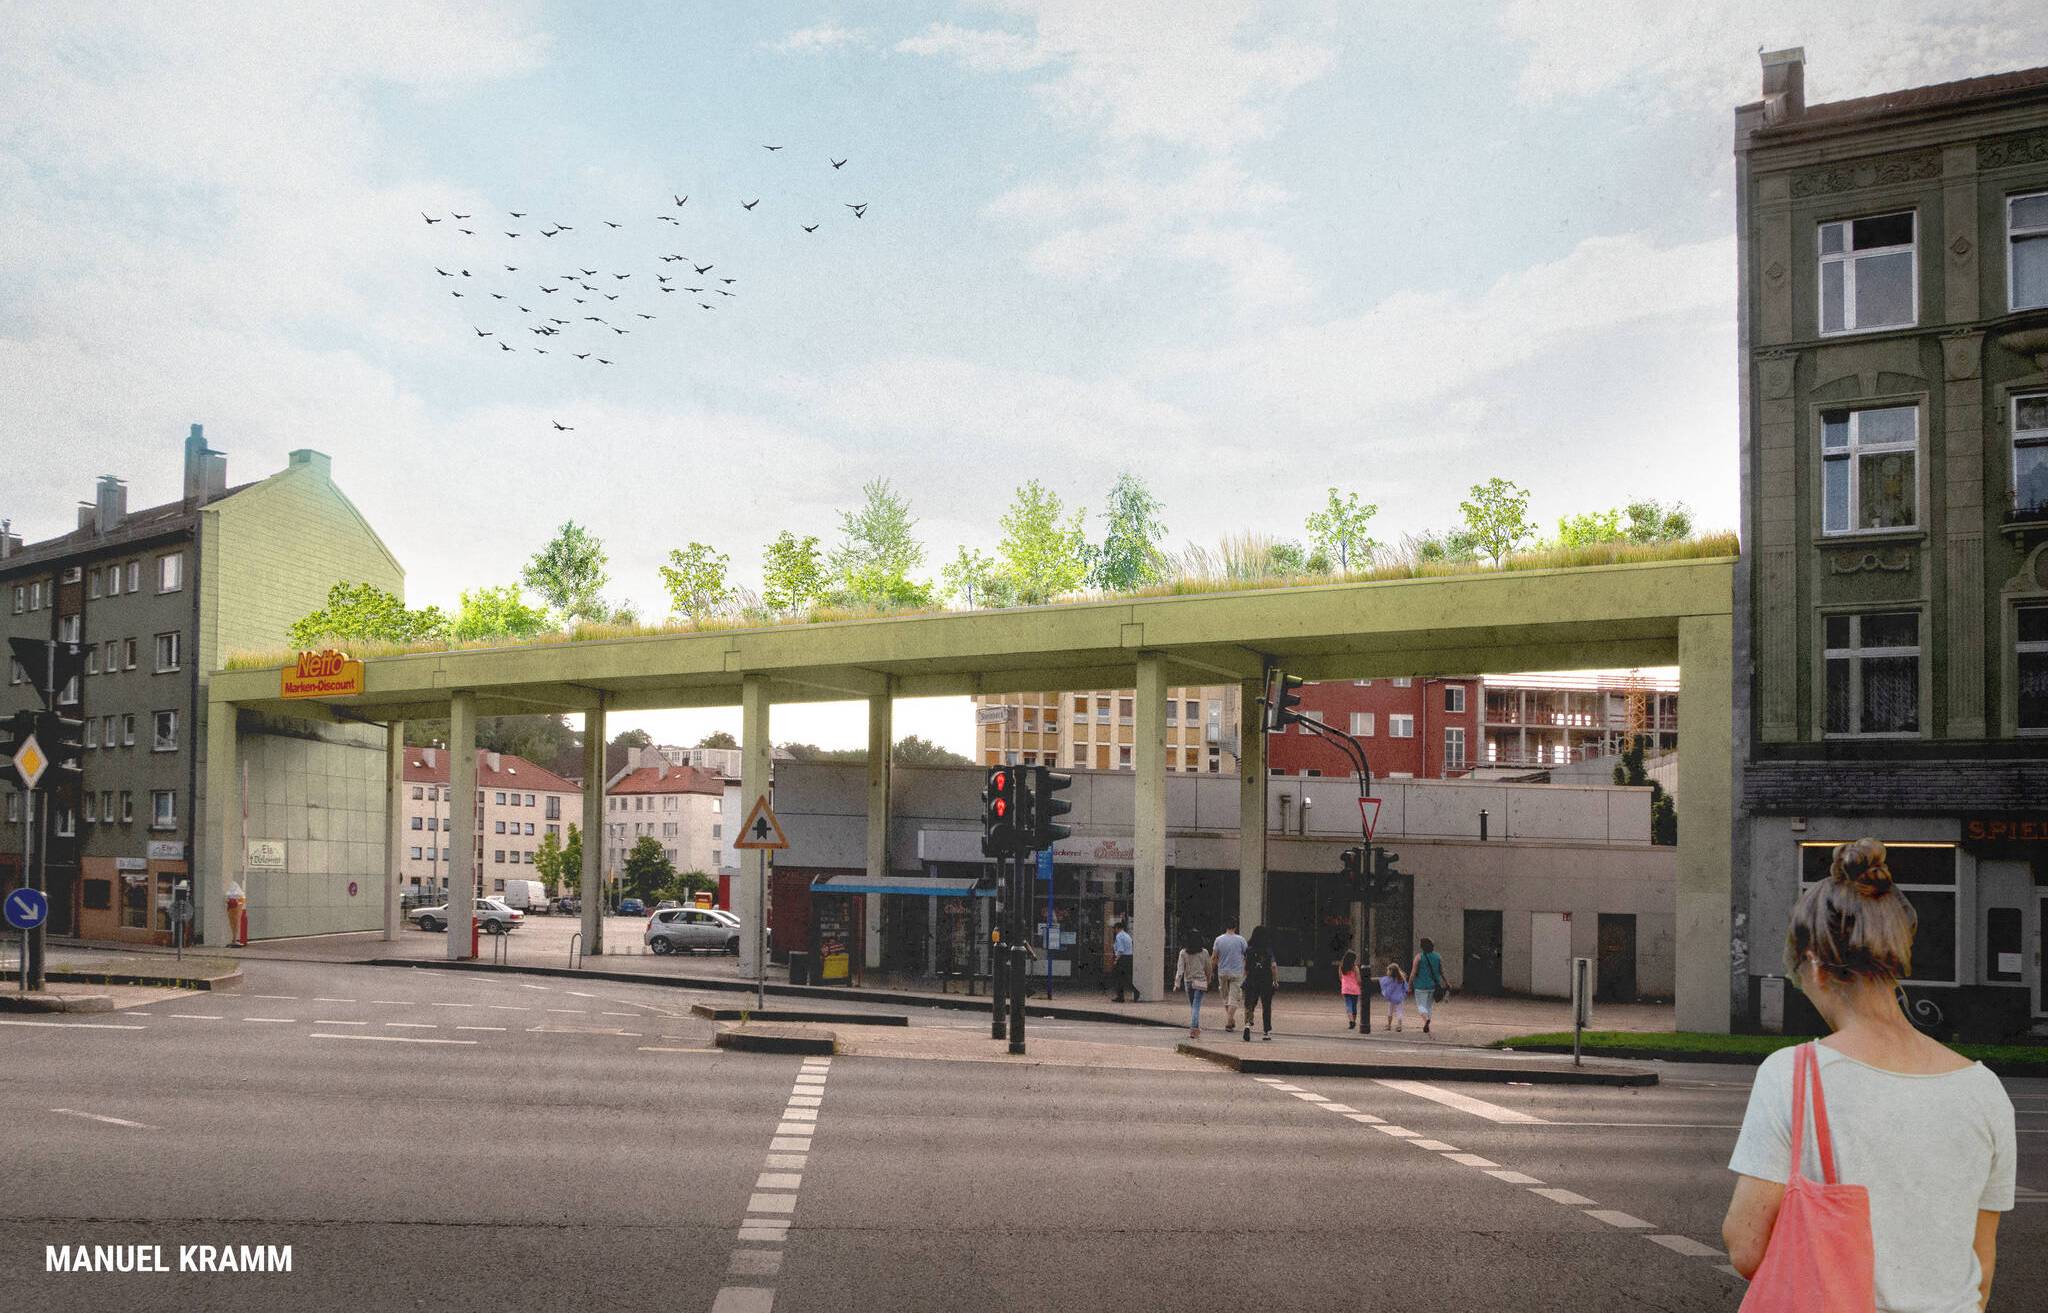  Alternativvorschlag zur Graffiti-Lösung - intensive Dachbegrünung für das Steinbecker Tor. 